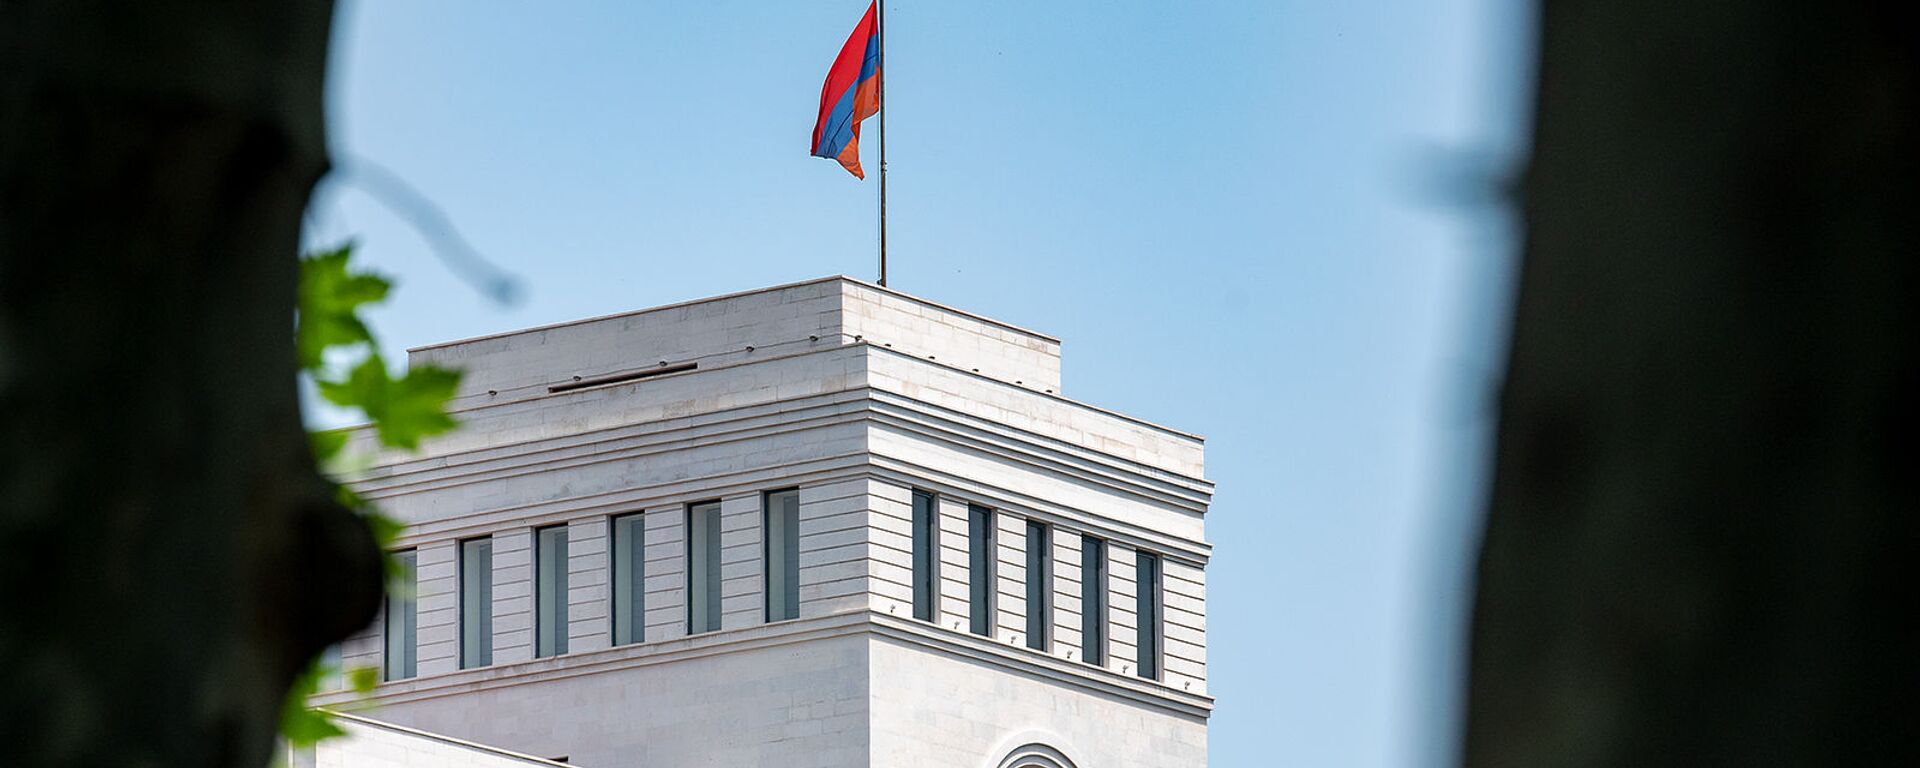 Здание Министерства иностранных дел Армении - Sputnik Армения, 1920, 27.07.2021